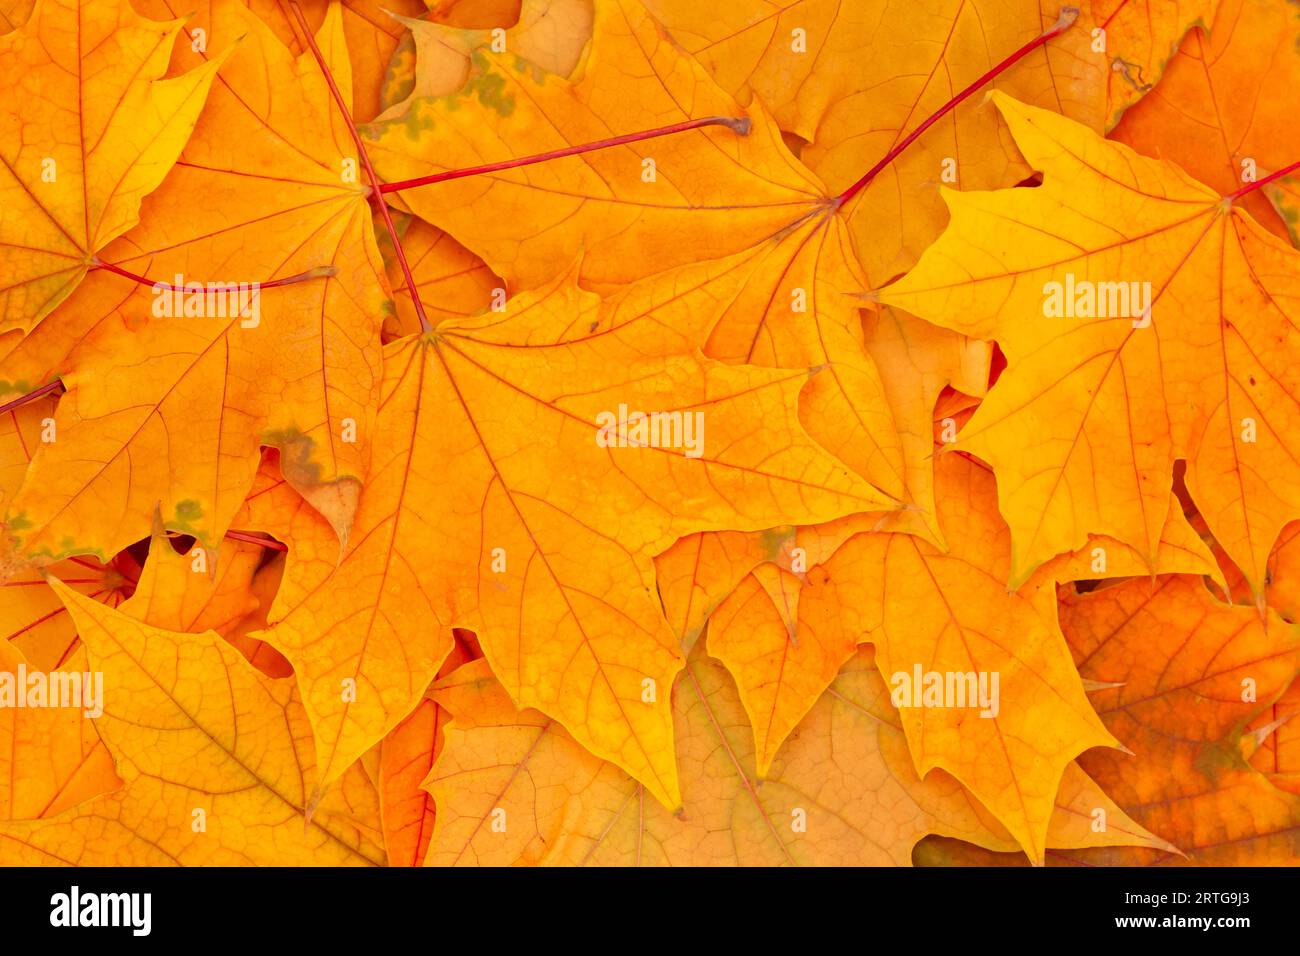 sfondo autunnale astratto: primo piano di un mucchio di foglie secche di acero d'arancio Foto Stock